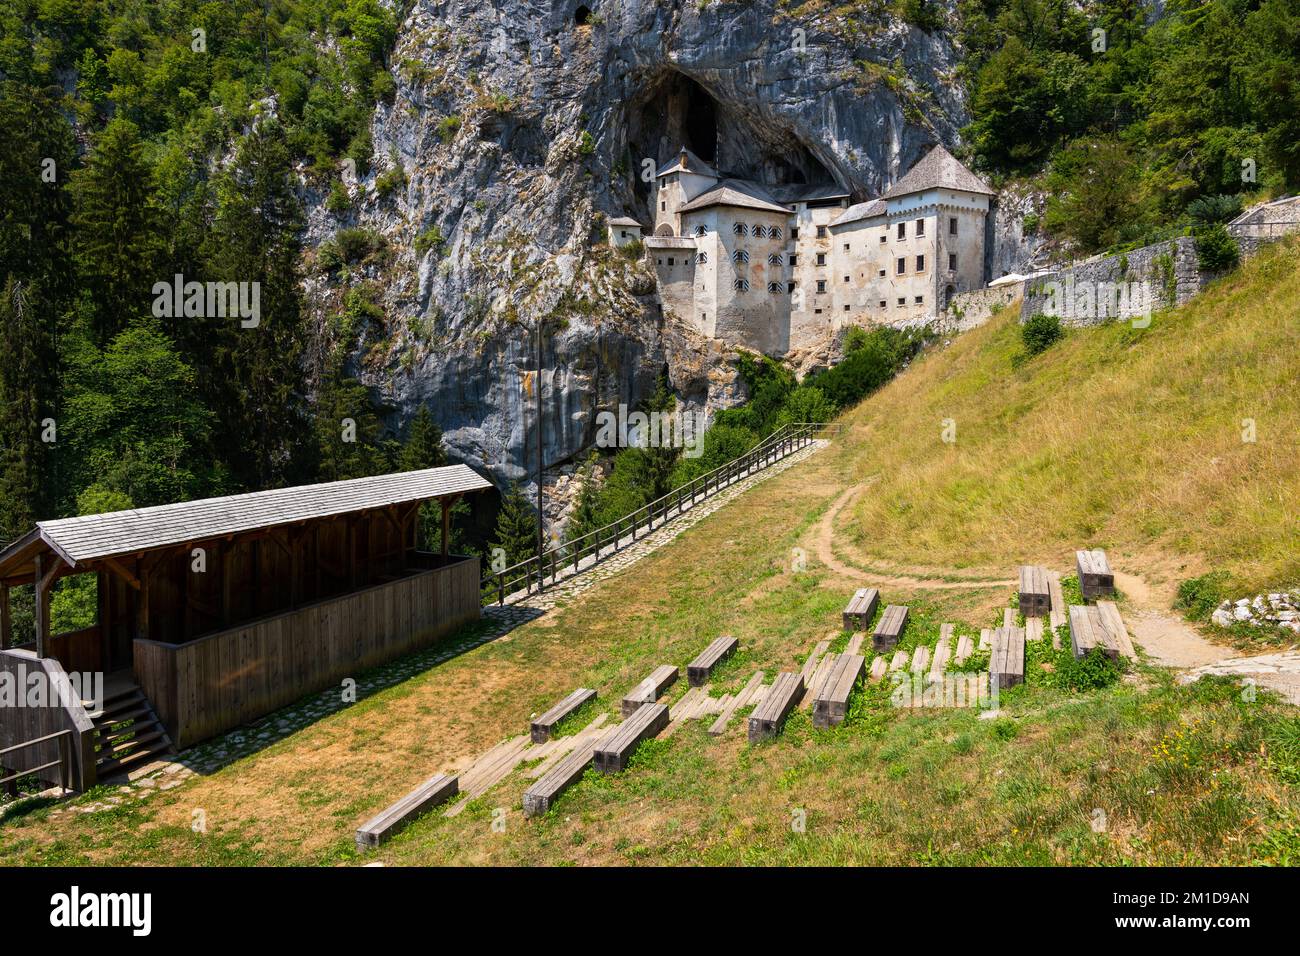 Landschaft mit mittelalterlichem Schloss Predjama in Slowenien. Die Höhlenburg in den Klippen mit einem Netz von geheimen Tunneln und dem Erazem Knight Tournament Ground mit Stockfoto